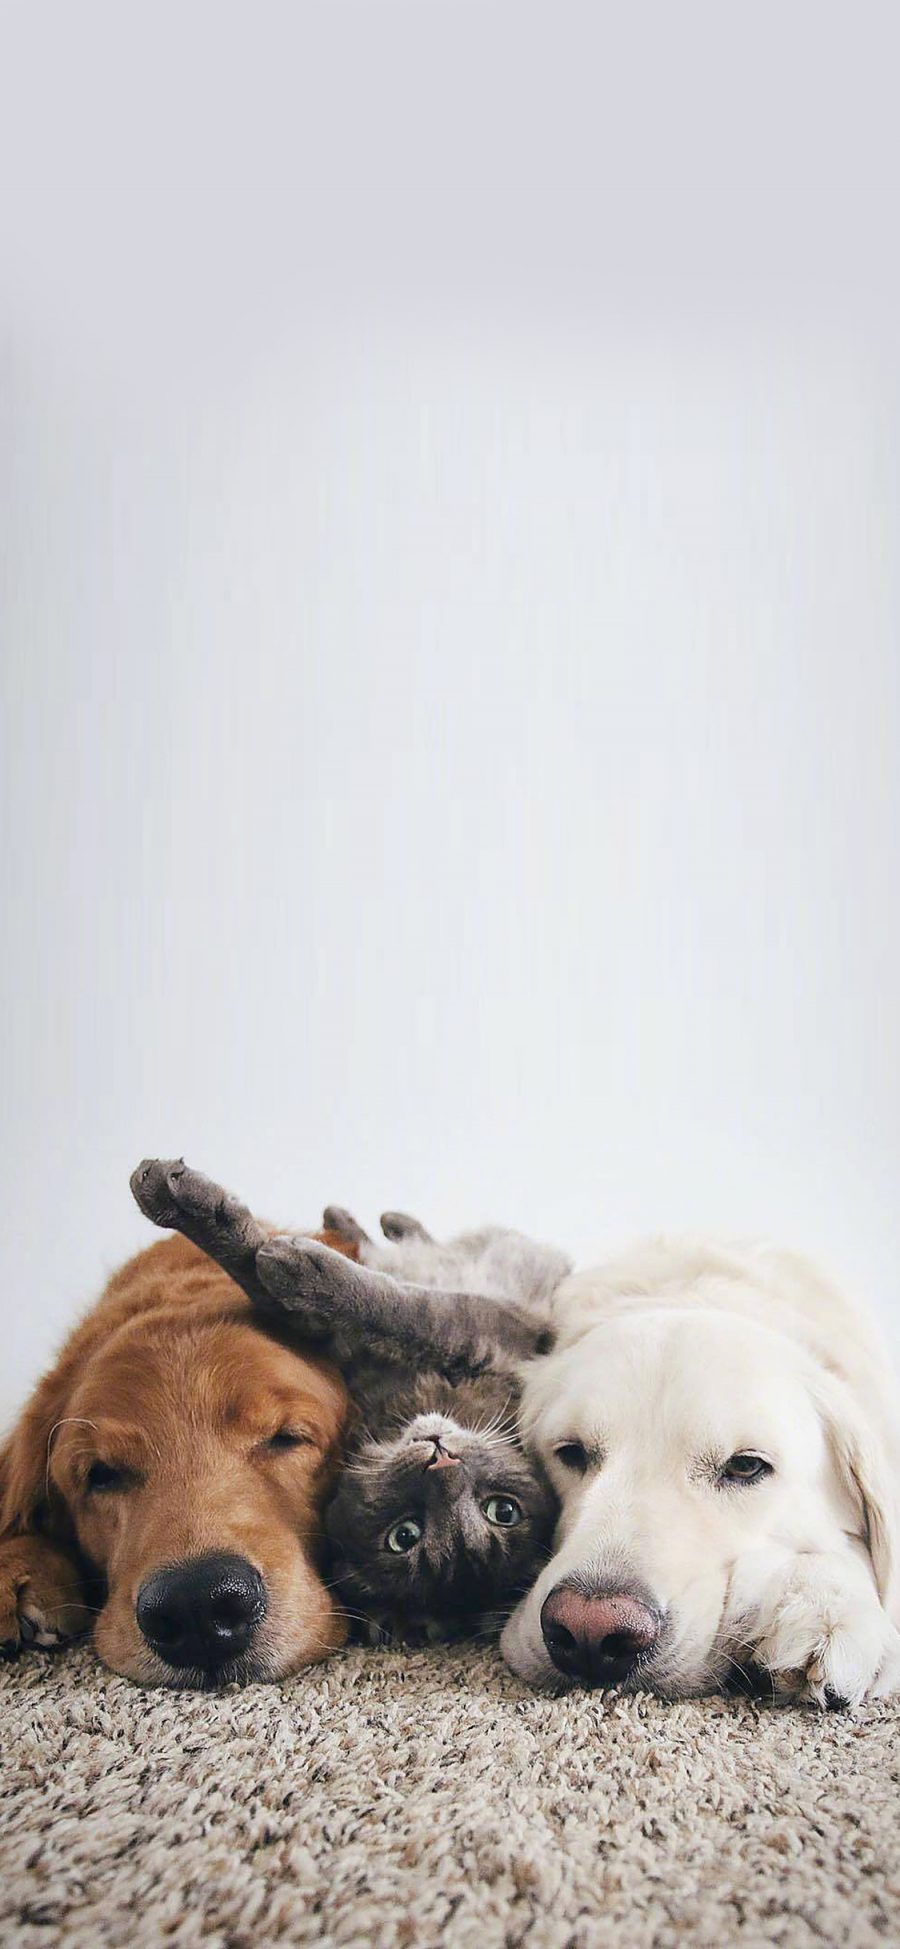 [2436×1125]金毛犬 犬类 猫咪 玩耍 地毯 苹果手机壁纸图片